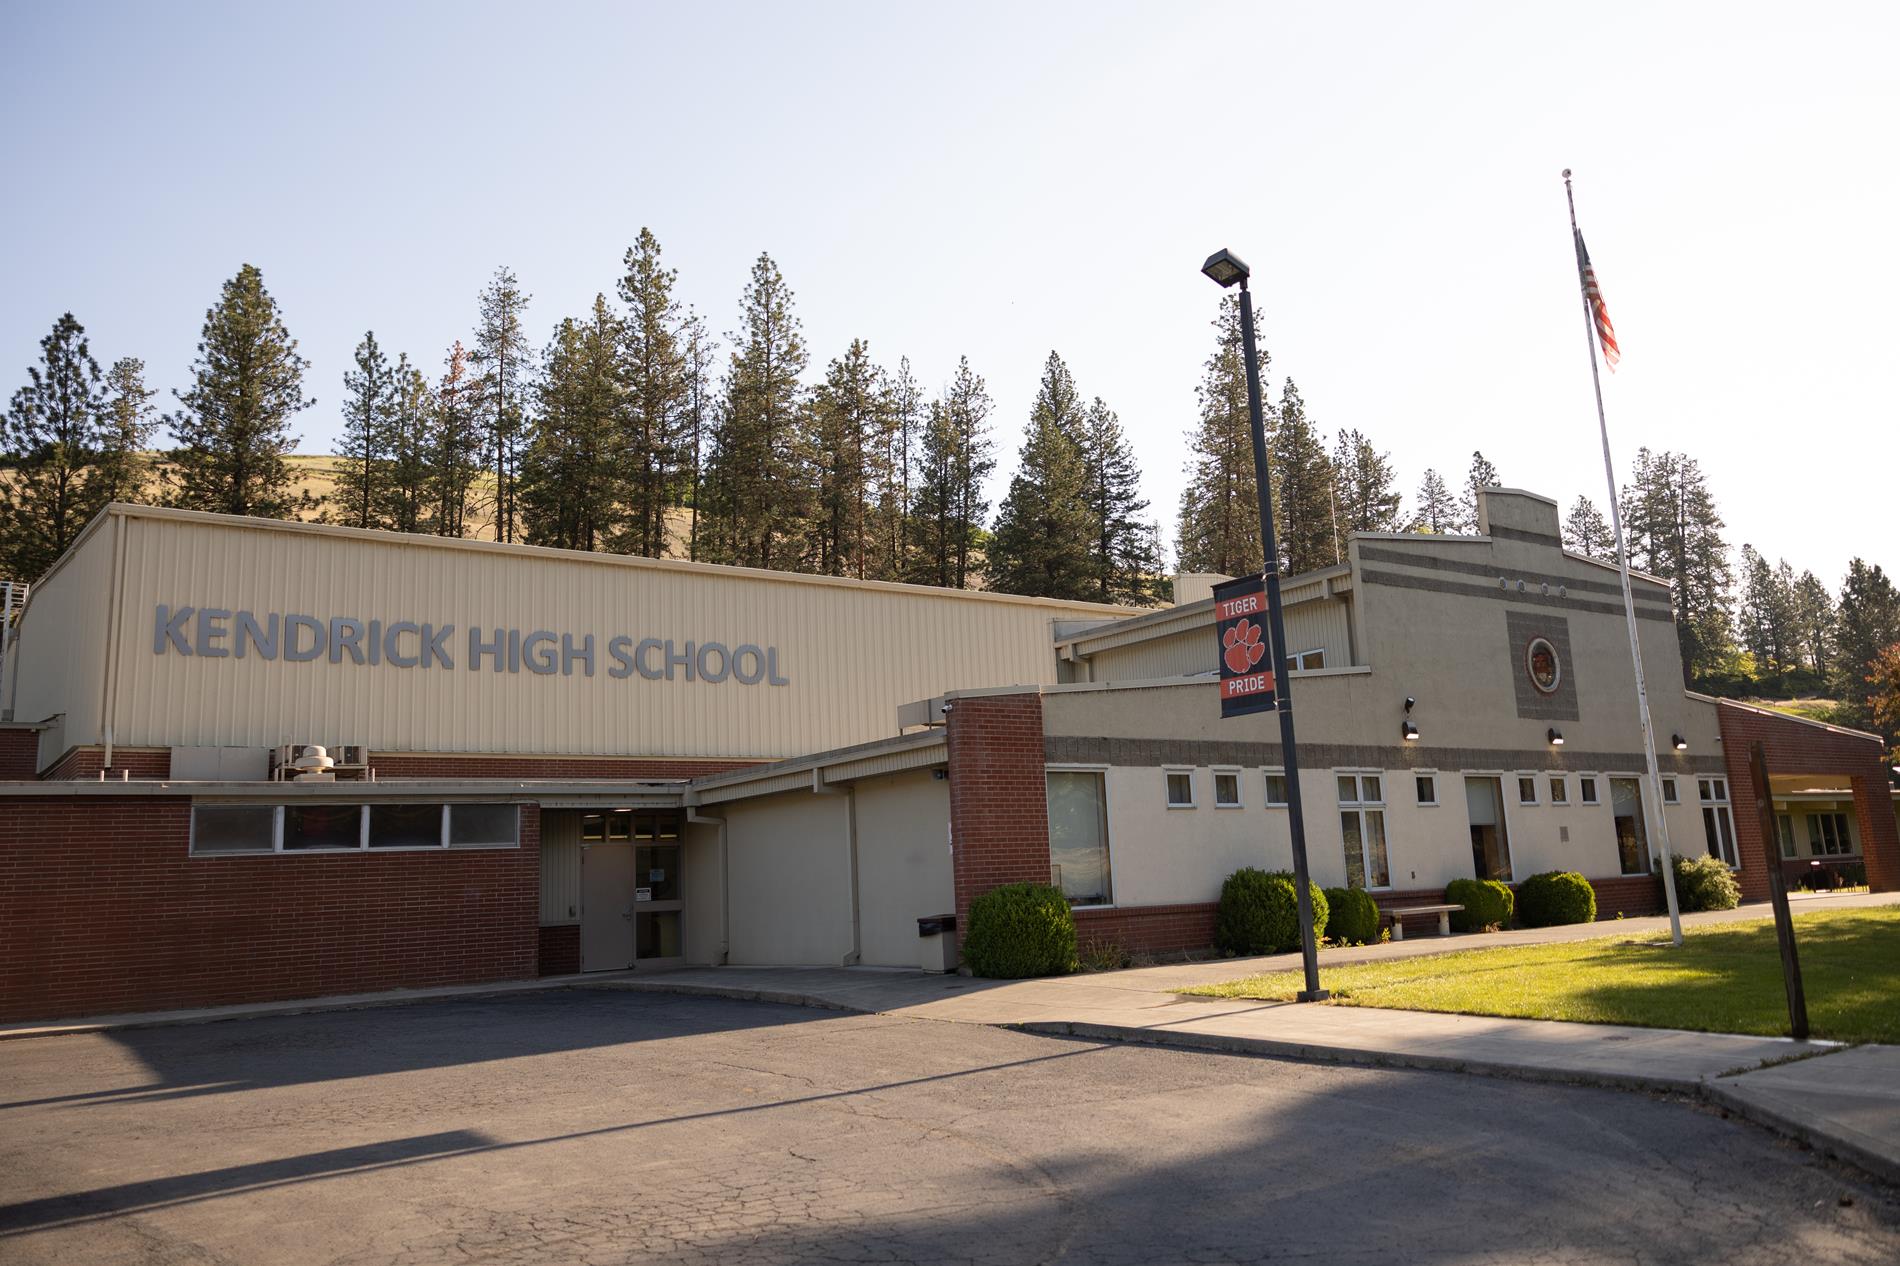 Kendrick High School Building